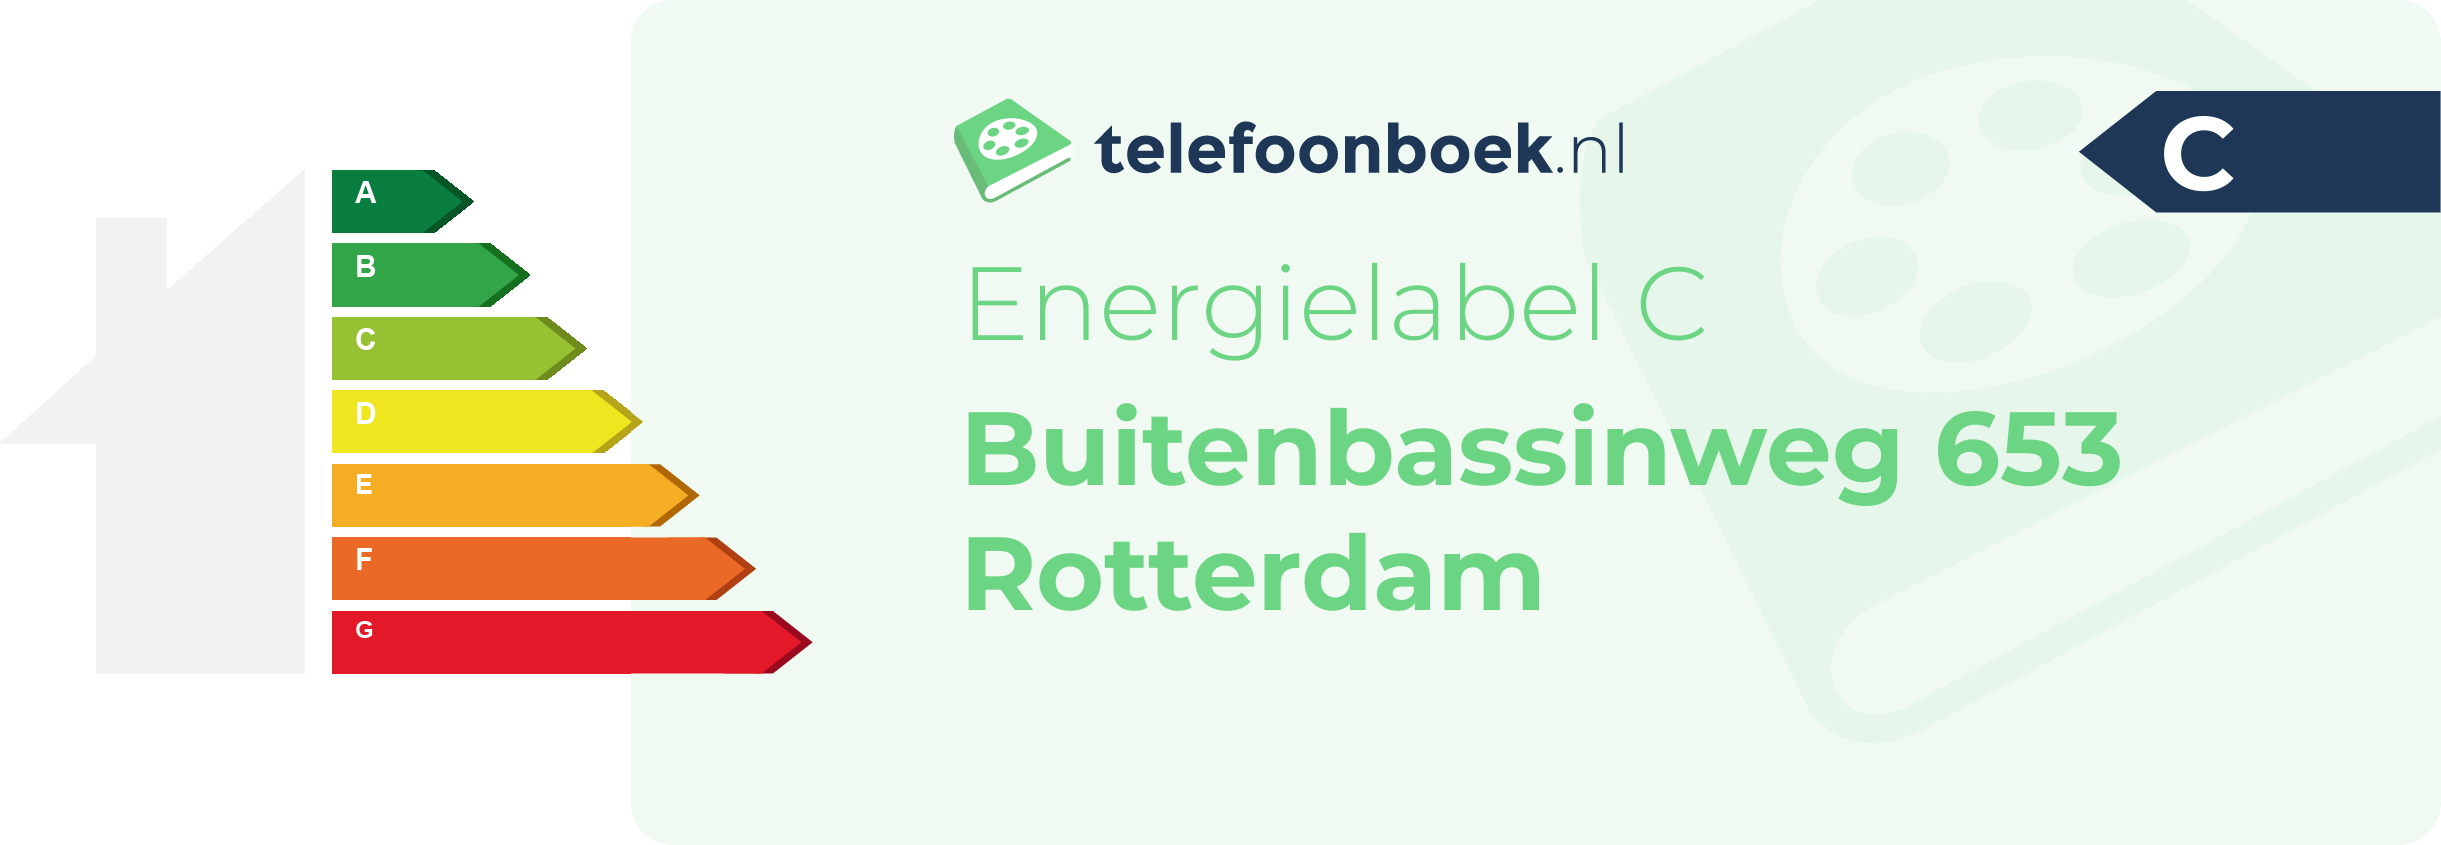 Energielabel Buitenbassinweg 653 Rotterdam